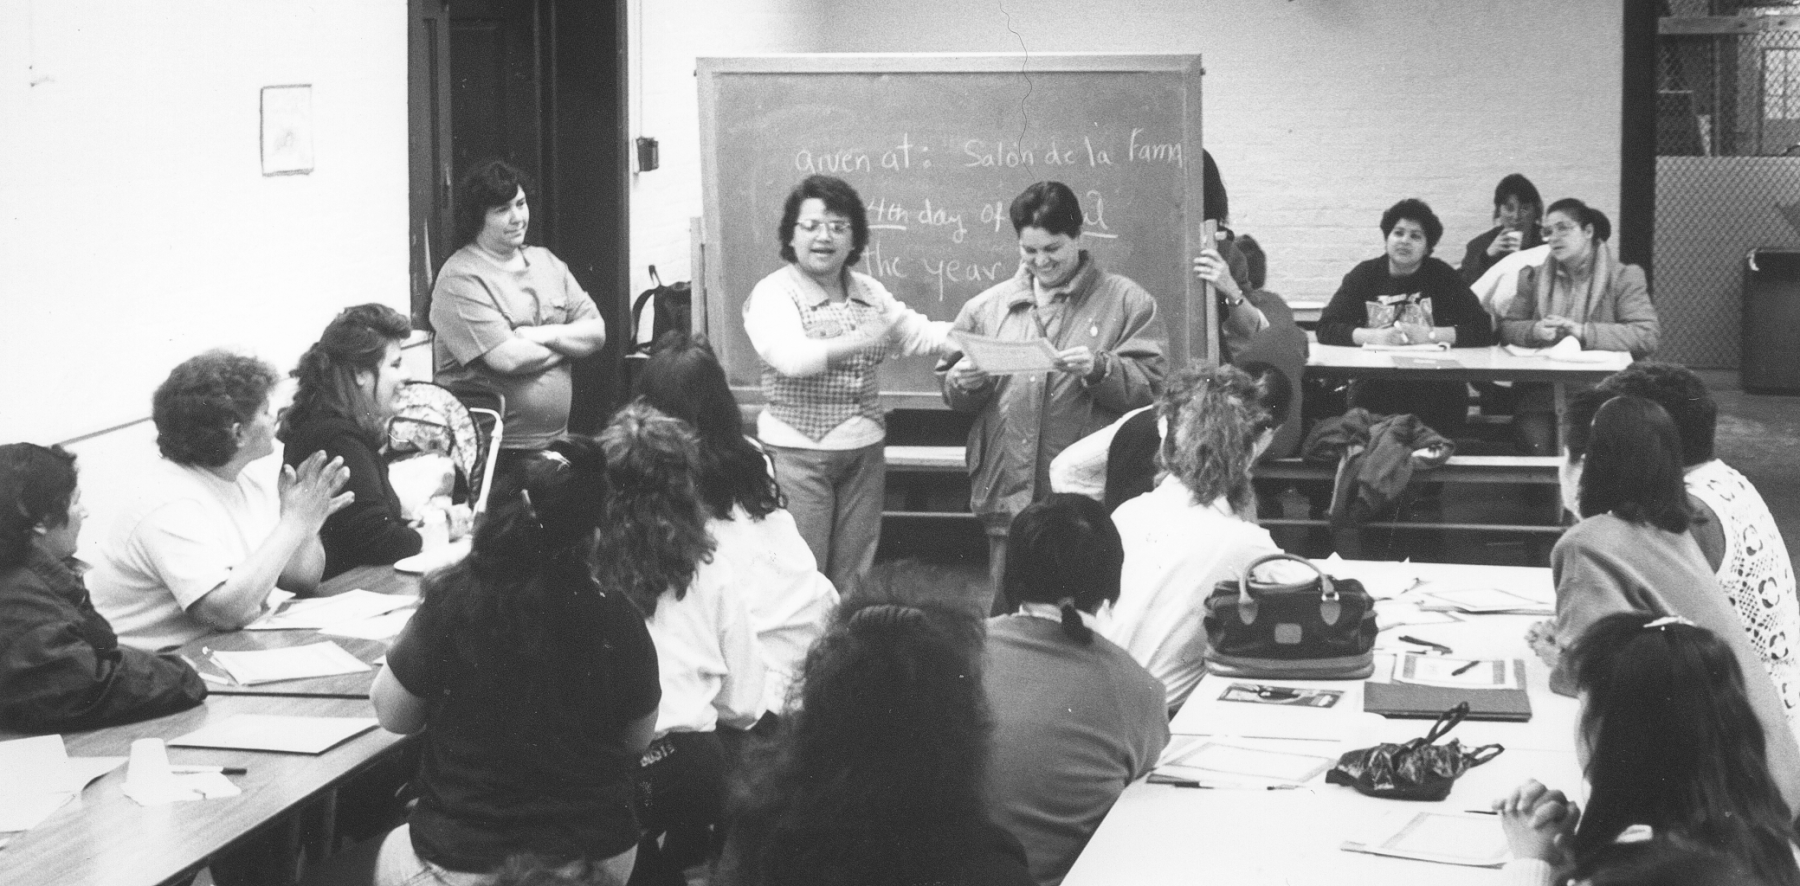 Una foto en blanco y negro de un grupo de mujeres en un salón de clases. Dos están parados cerca de la pizarra, una mujer habla y la otra sostiene un certificado.